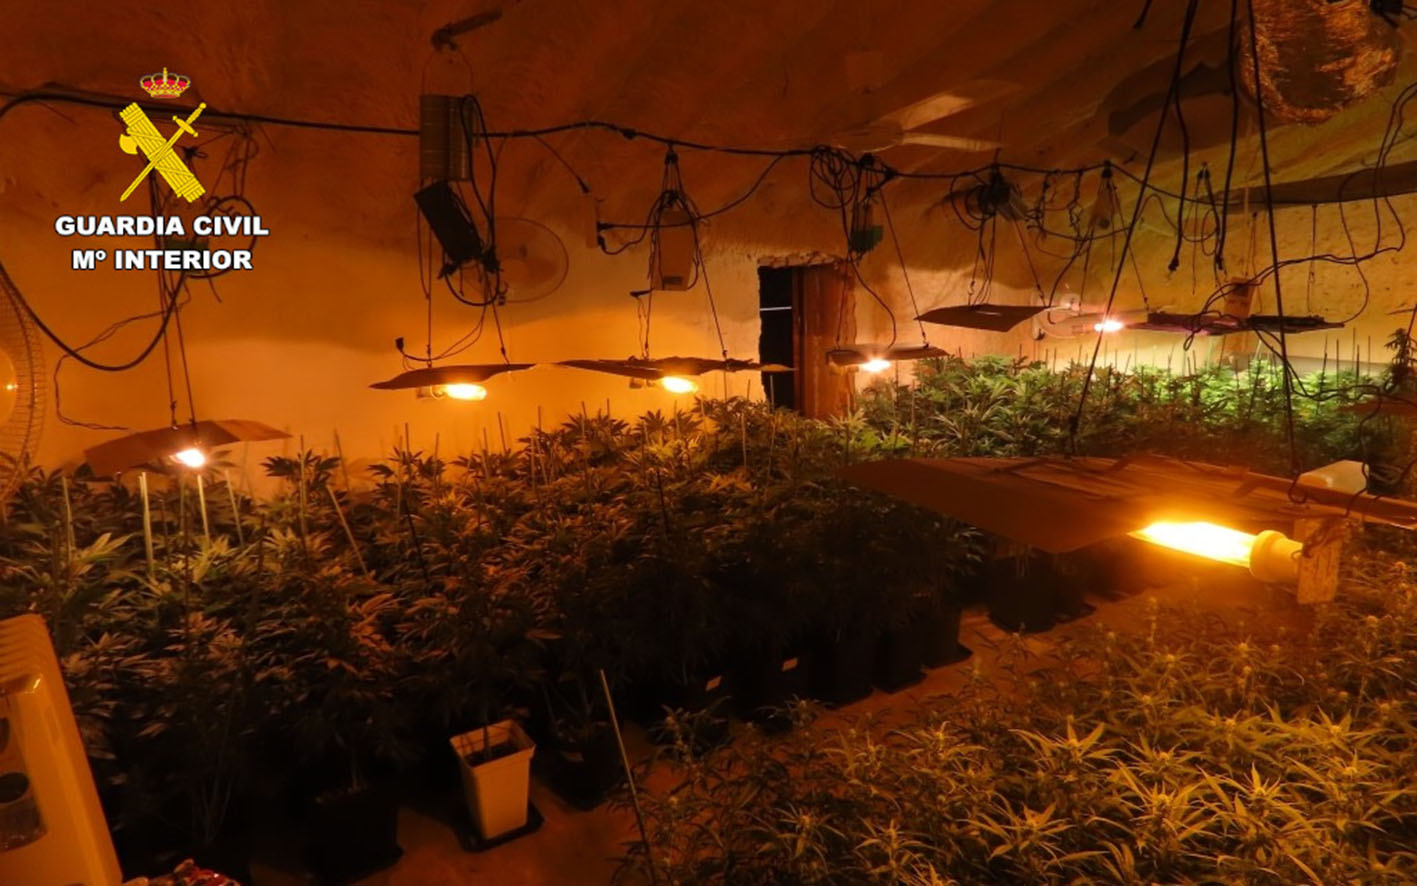 Plantación de marihuana indoor localizada en Isso, una pedanía de Hellín (Albacete).